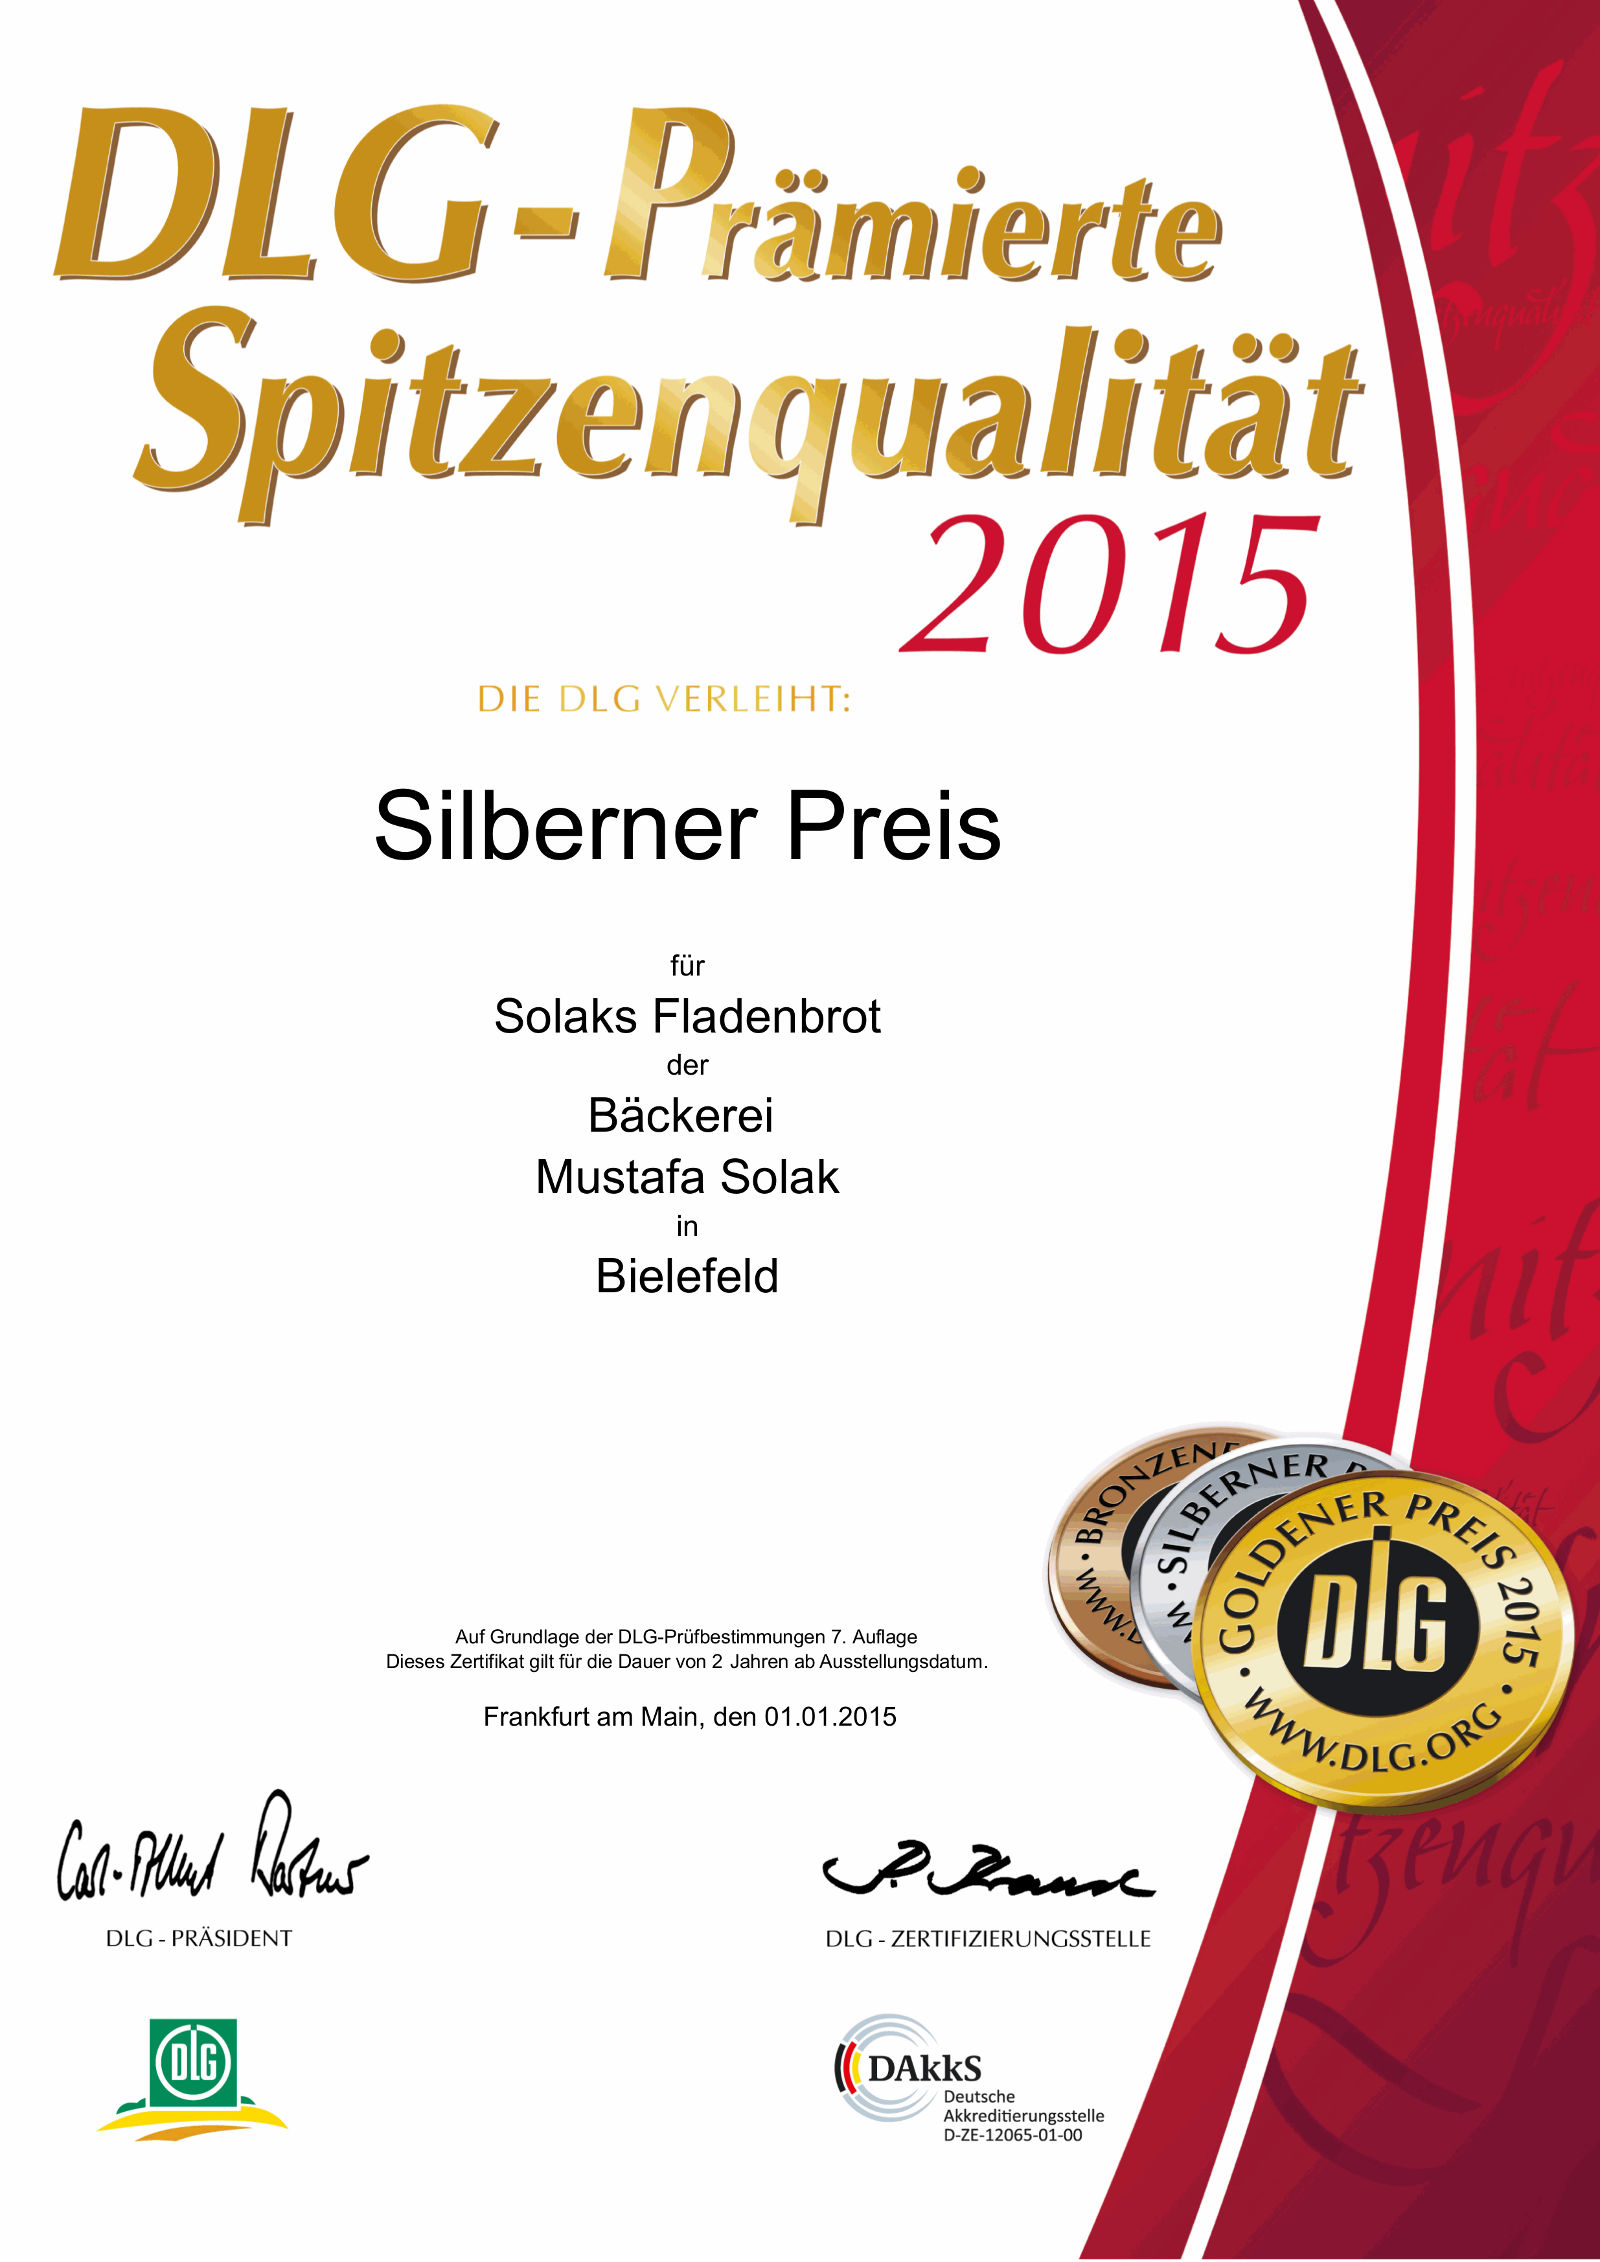 DLG Urkunde/Zertifikat: Silberner Preis 2015 | Spitzenqualität für Fladenbrot der Bäckerei Solak in Bielefeld